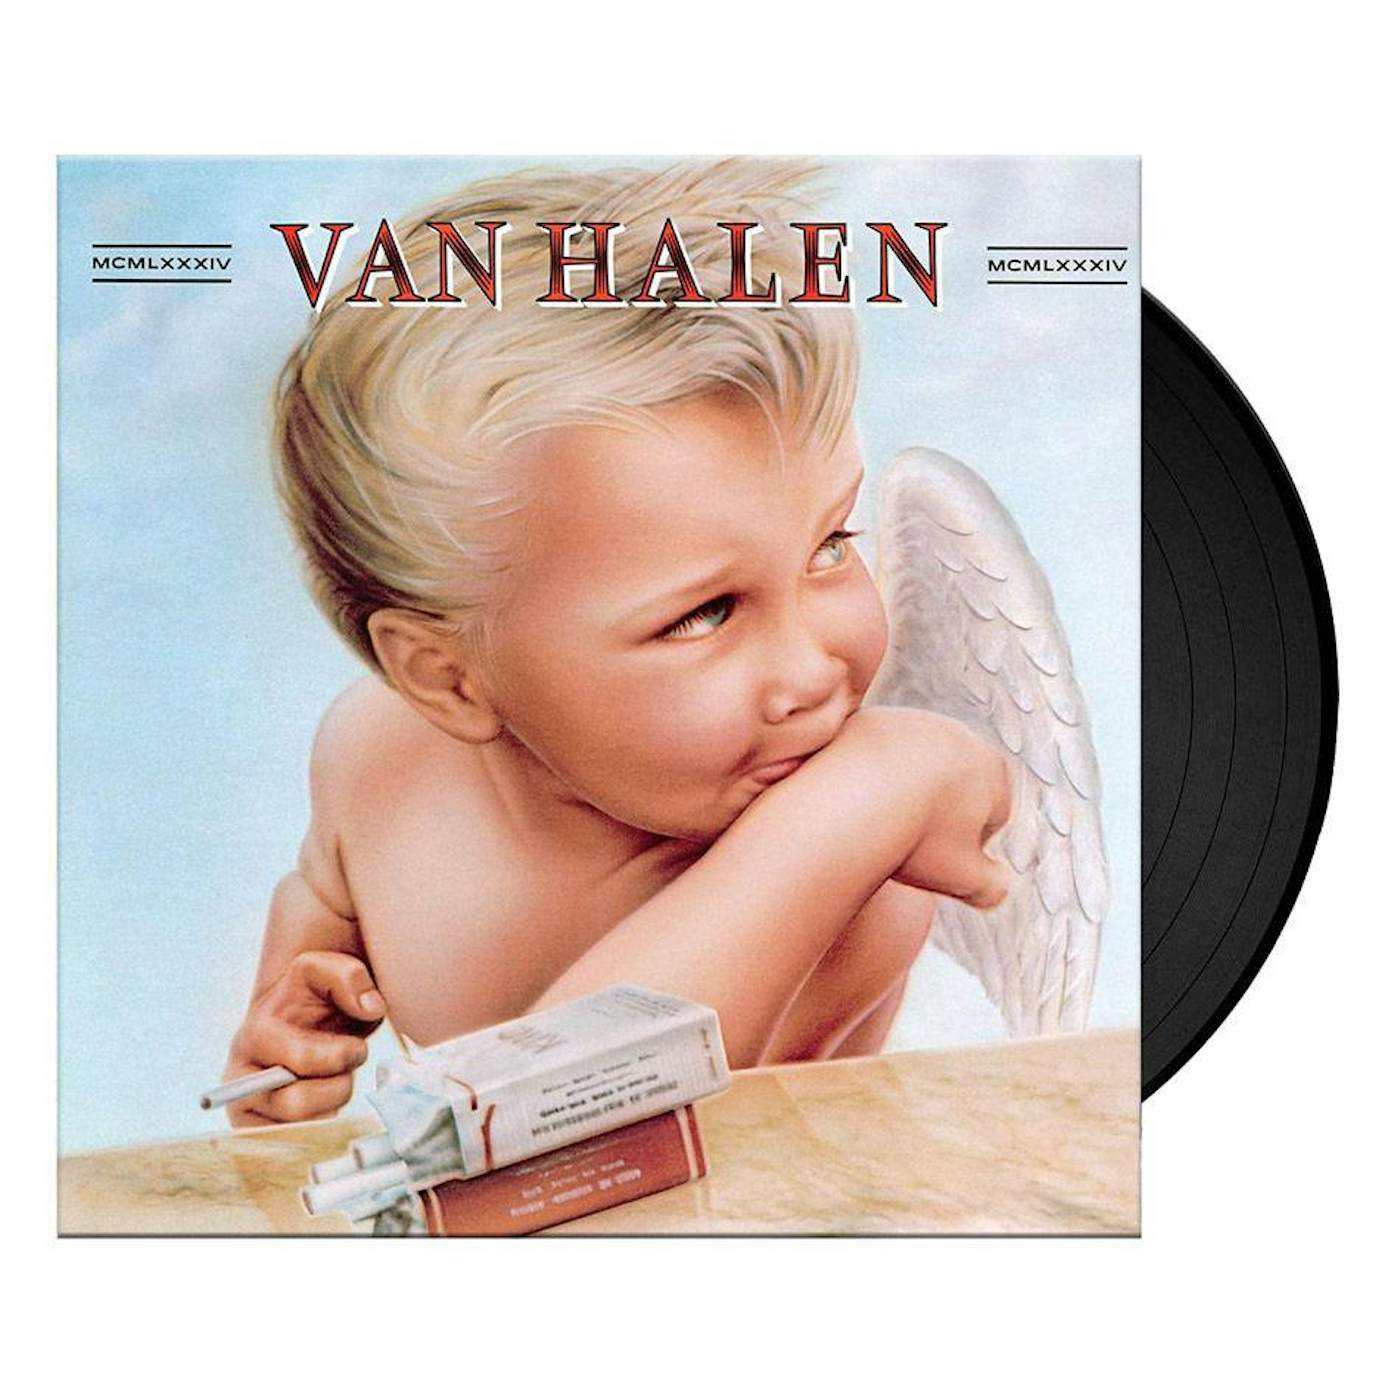 Van Halen 1984 (Remastered/180g) Vinyl Record